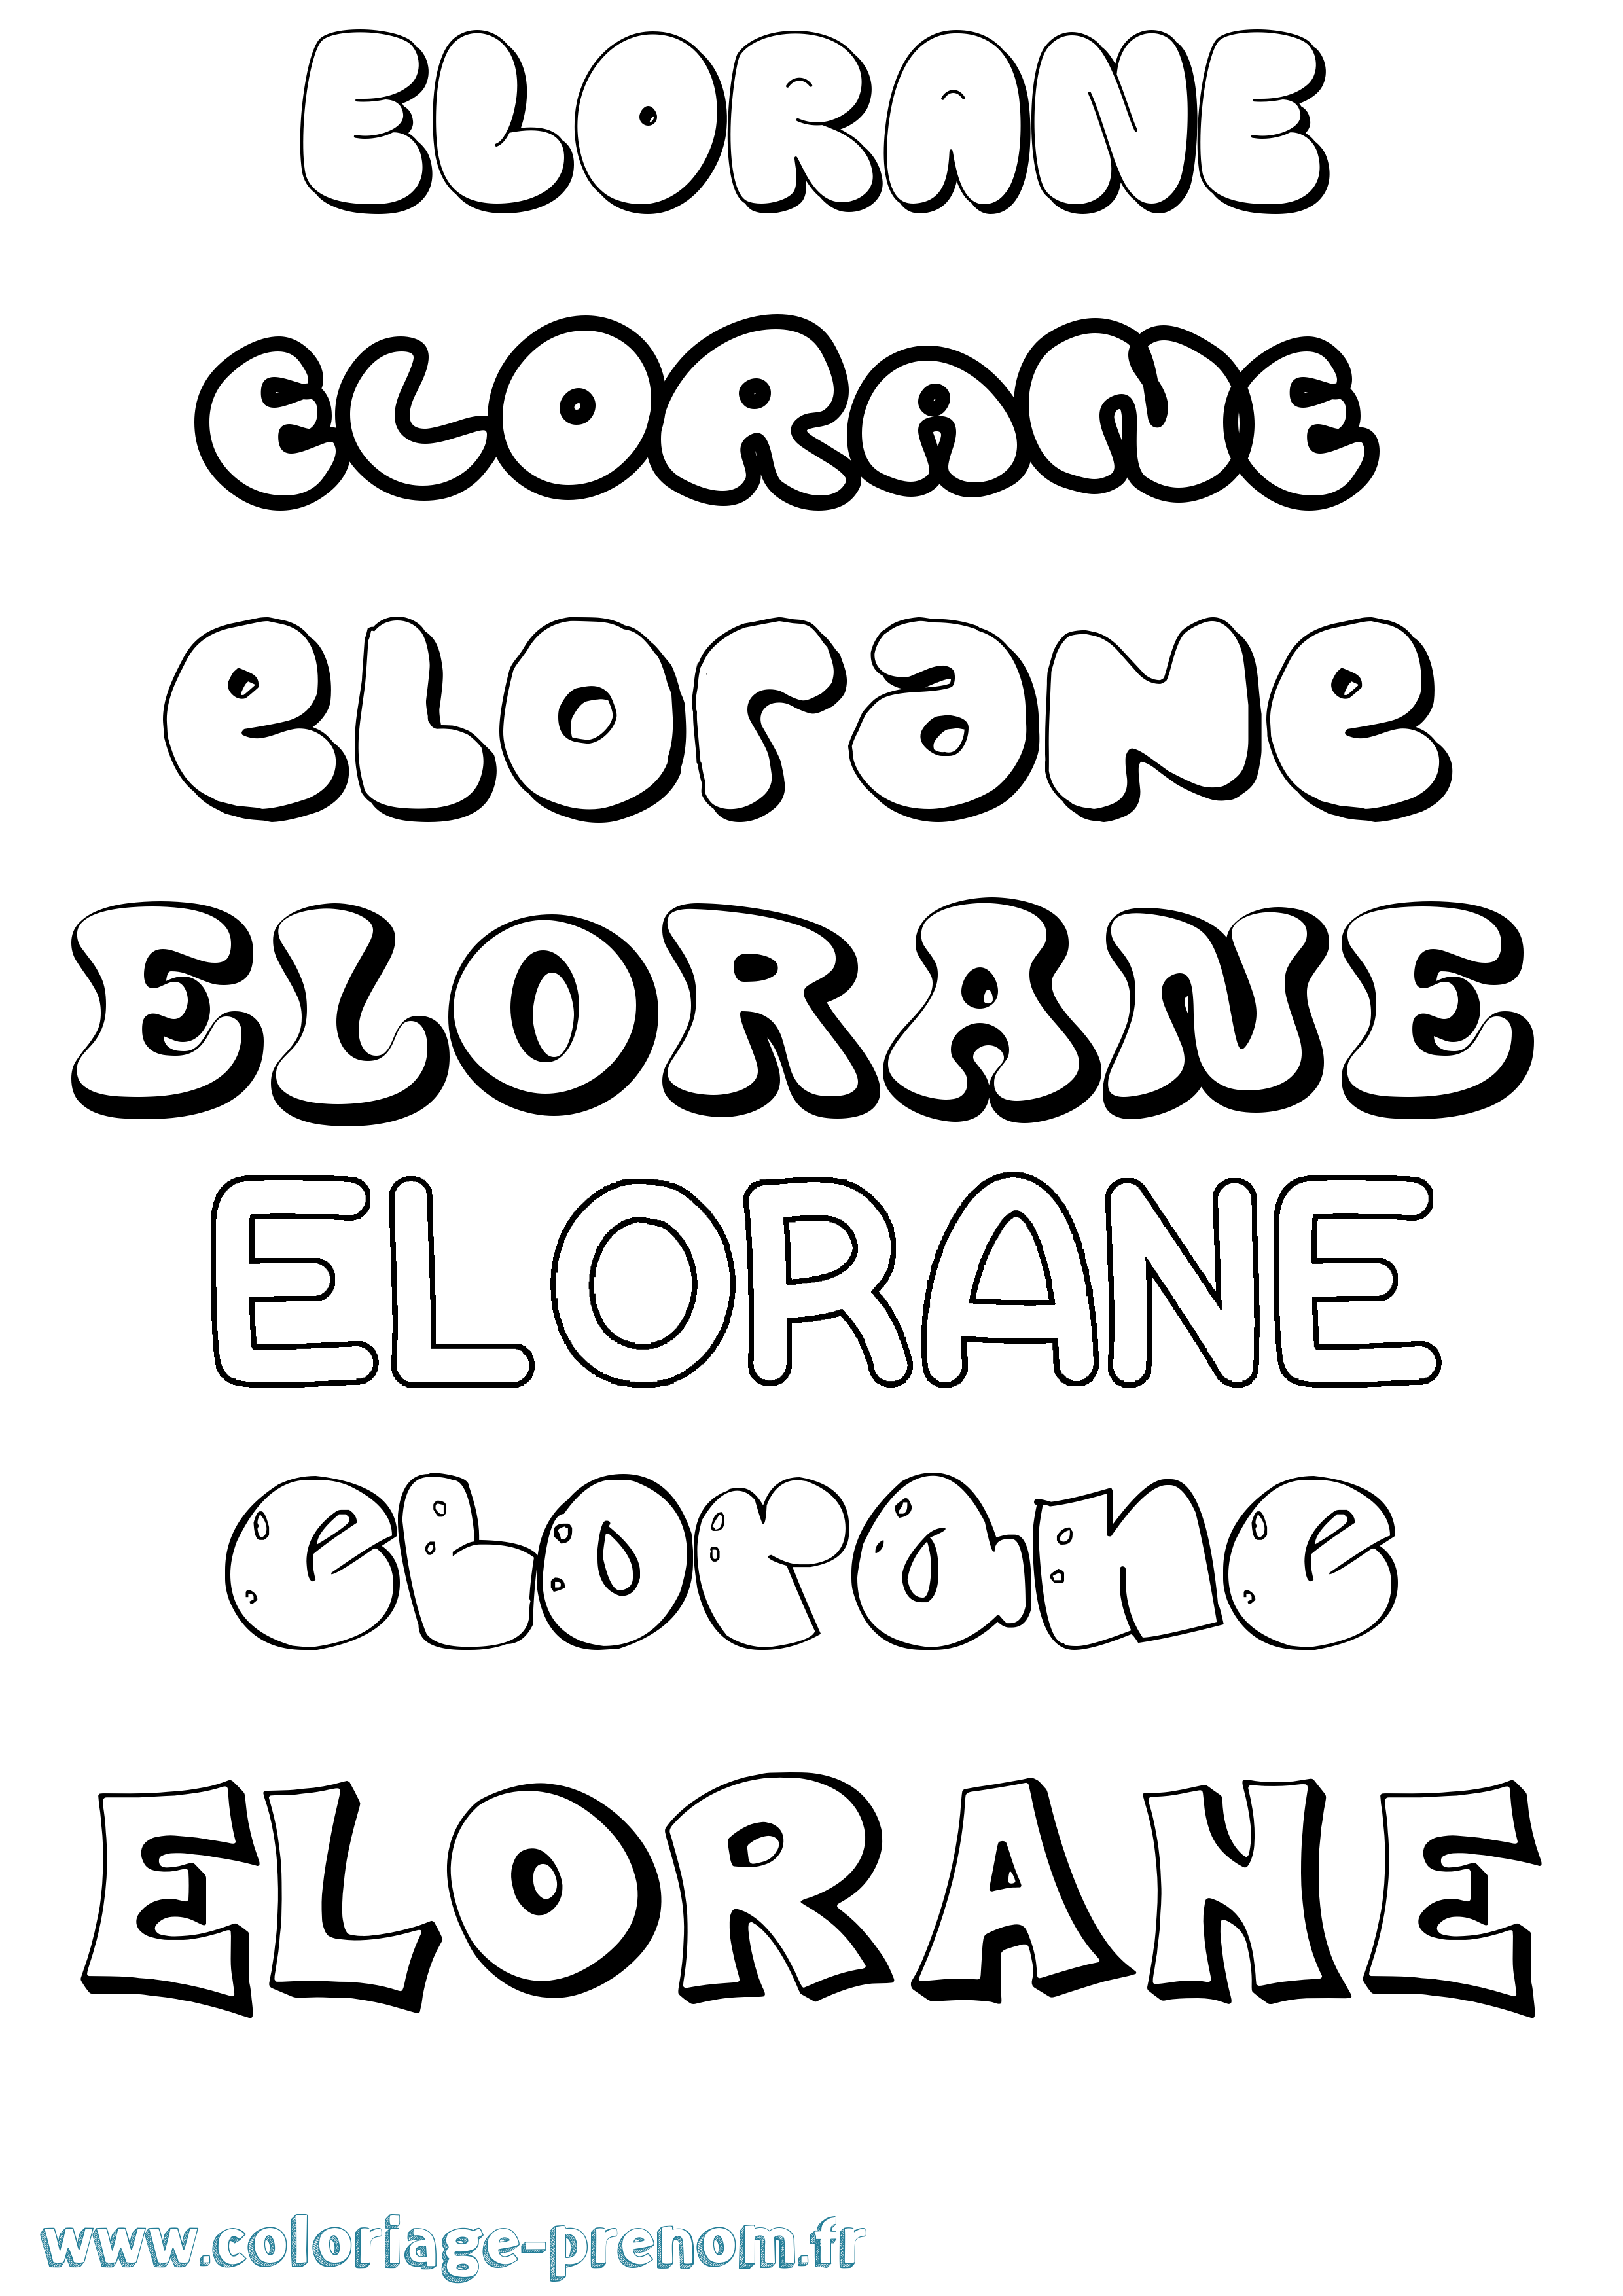 Coloriage prénom Elorane Bubble